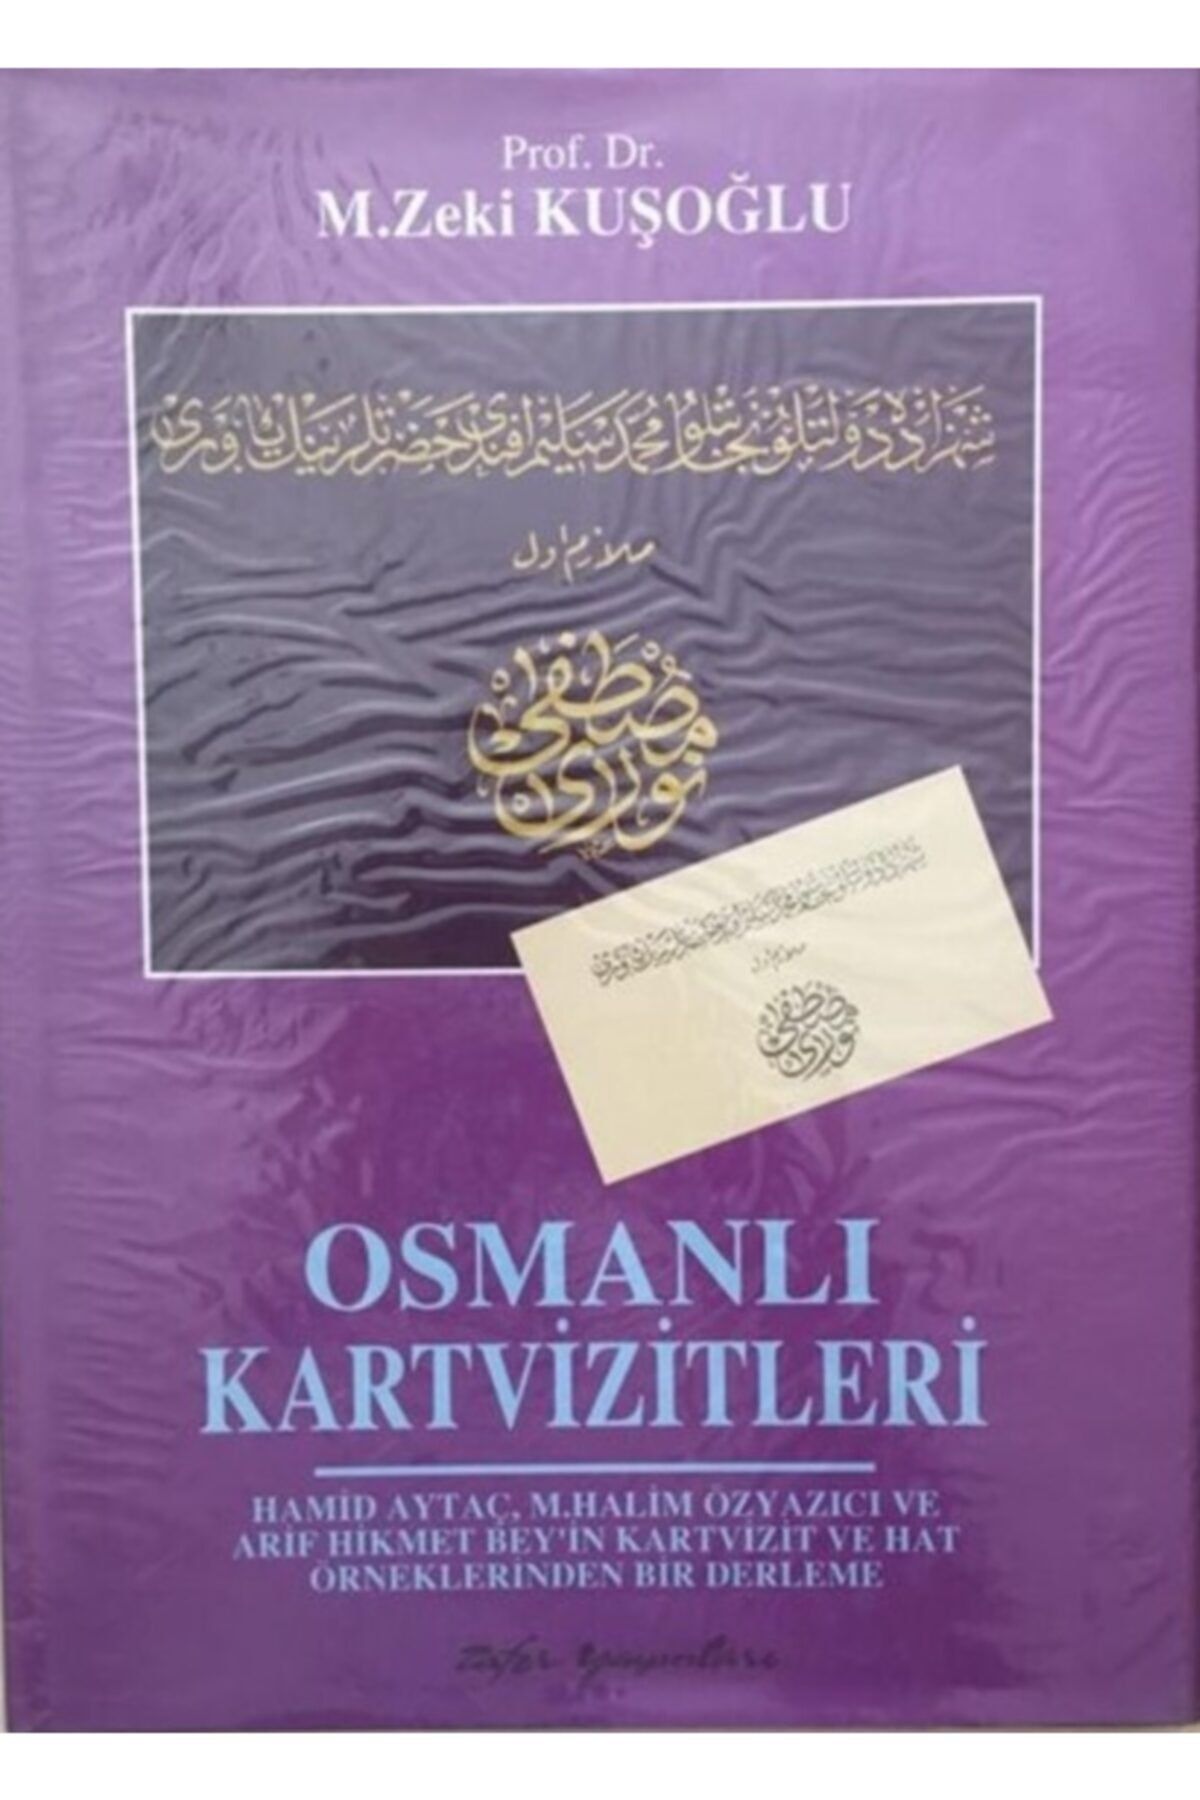 Zafer Yayınları Osmanlı Kartvizitleri-prof. Dr. M. Zeki Kuşoğlu